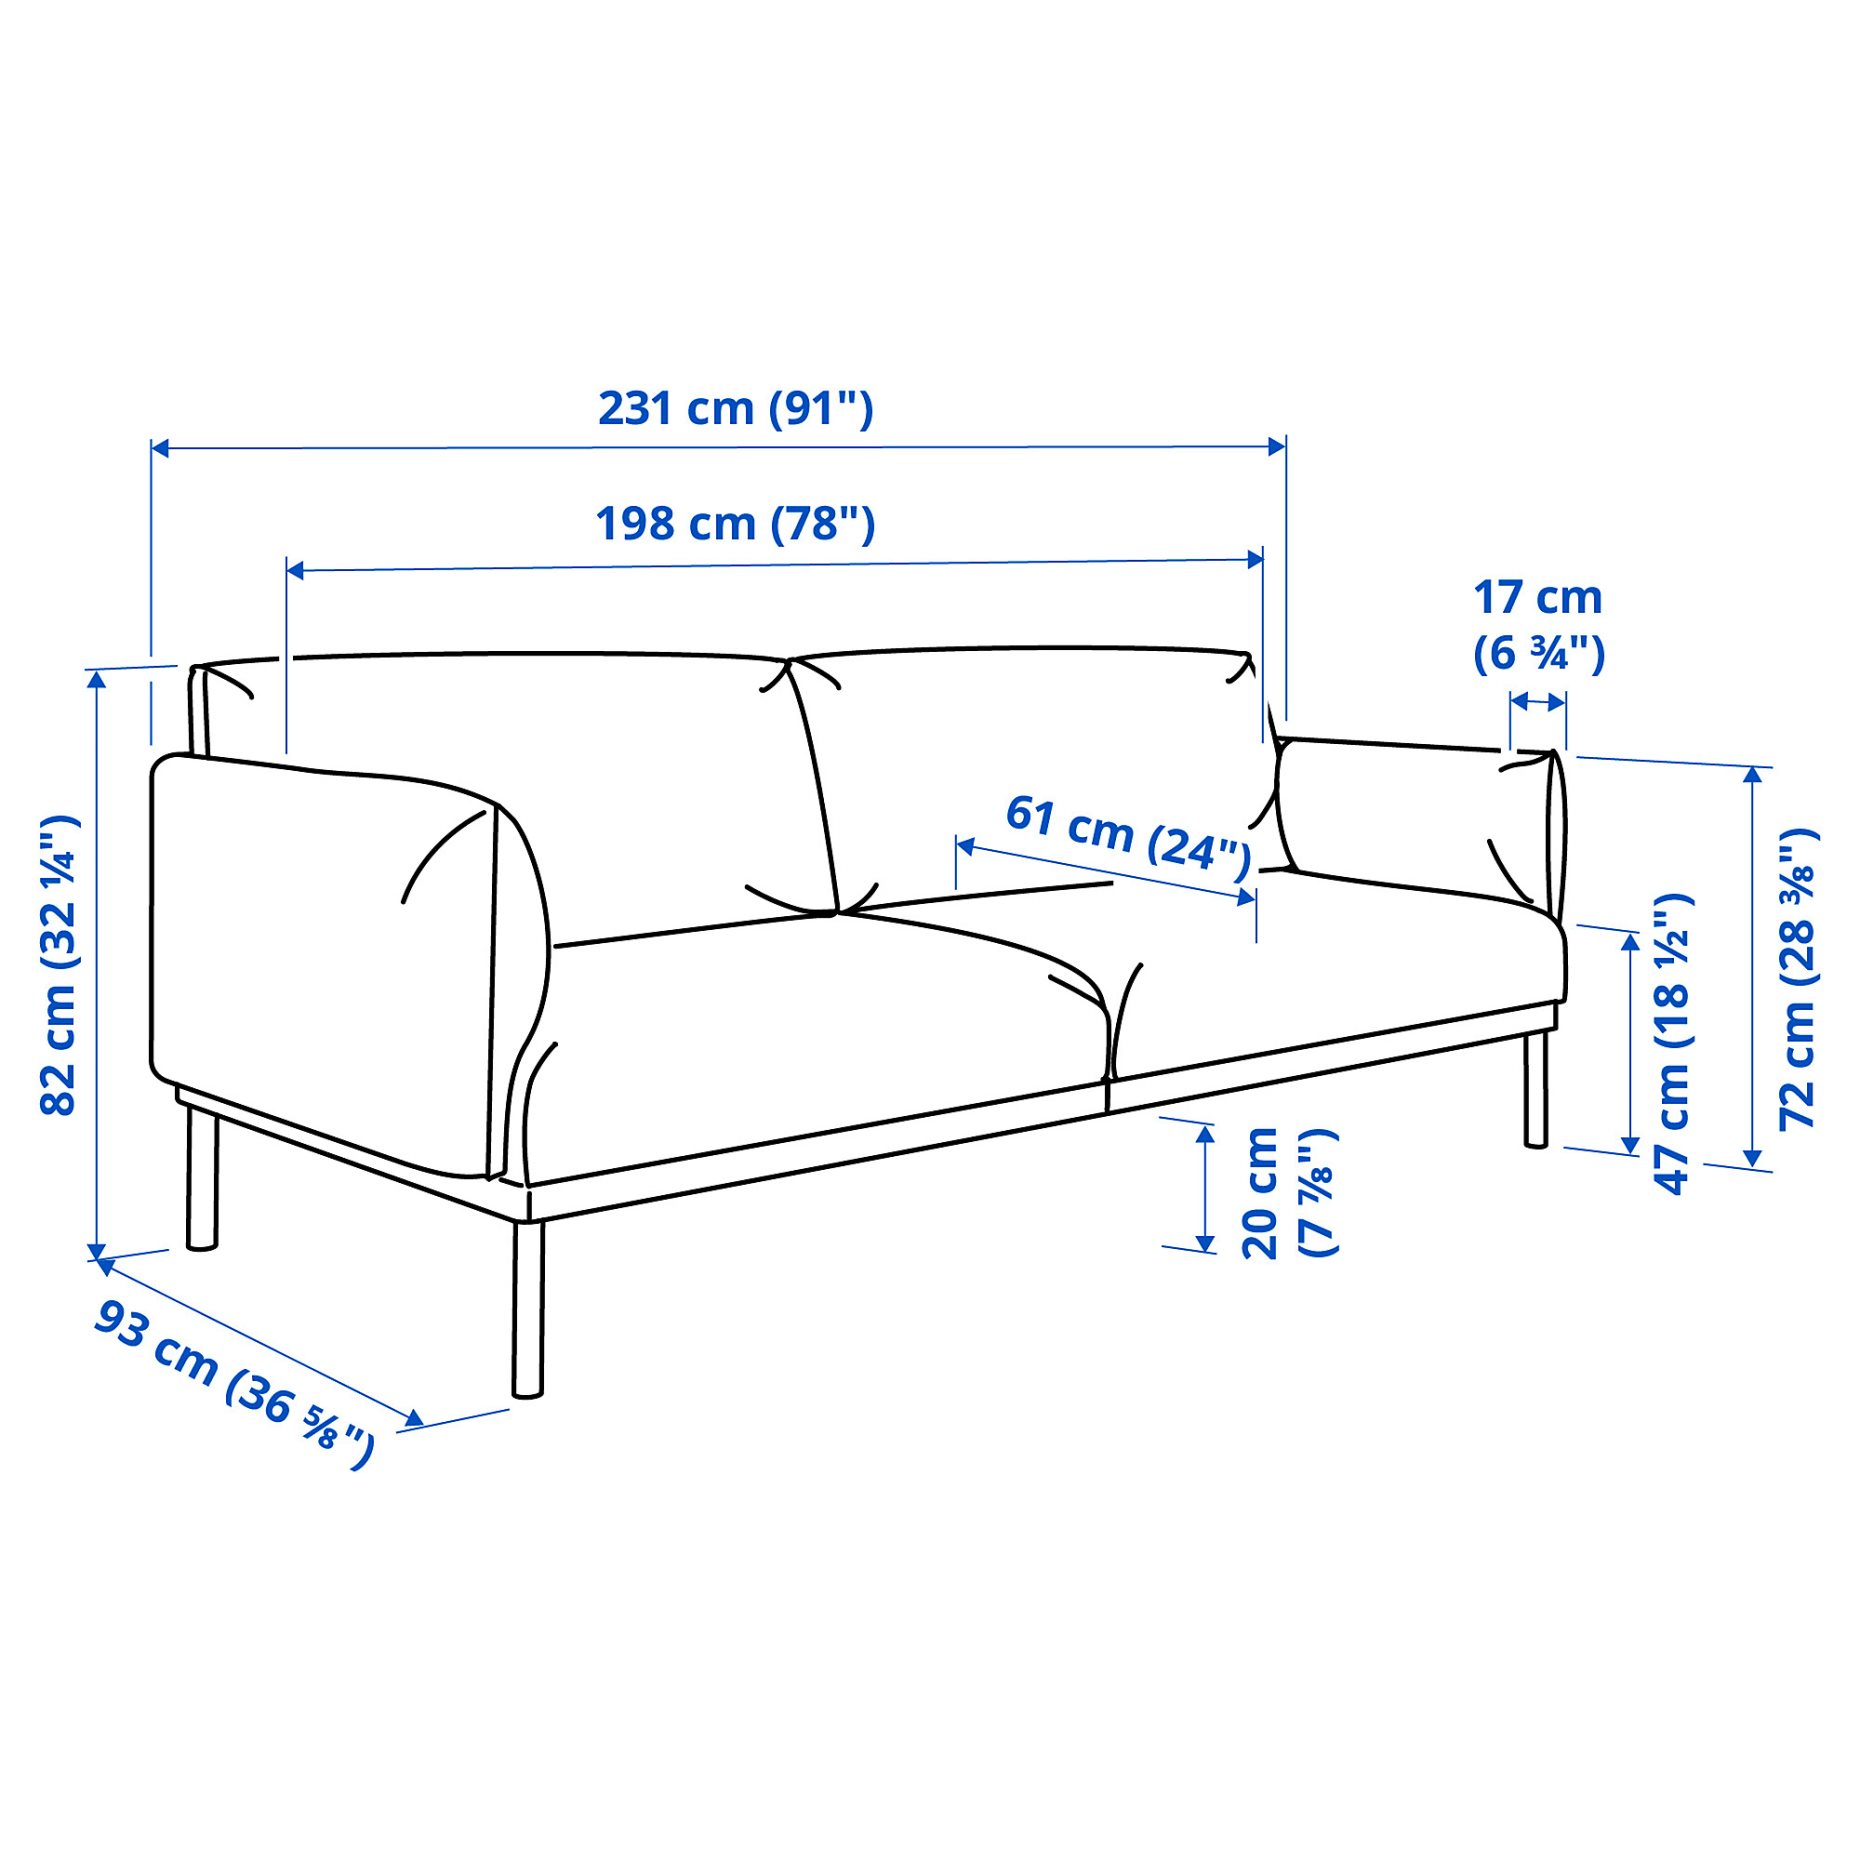 ÄPPLARYD, 3-seat sofa, 705.062.37